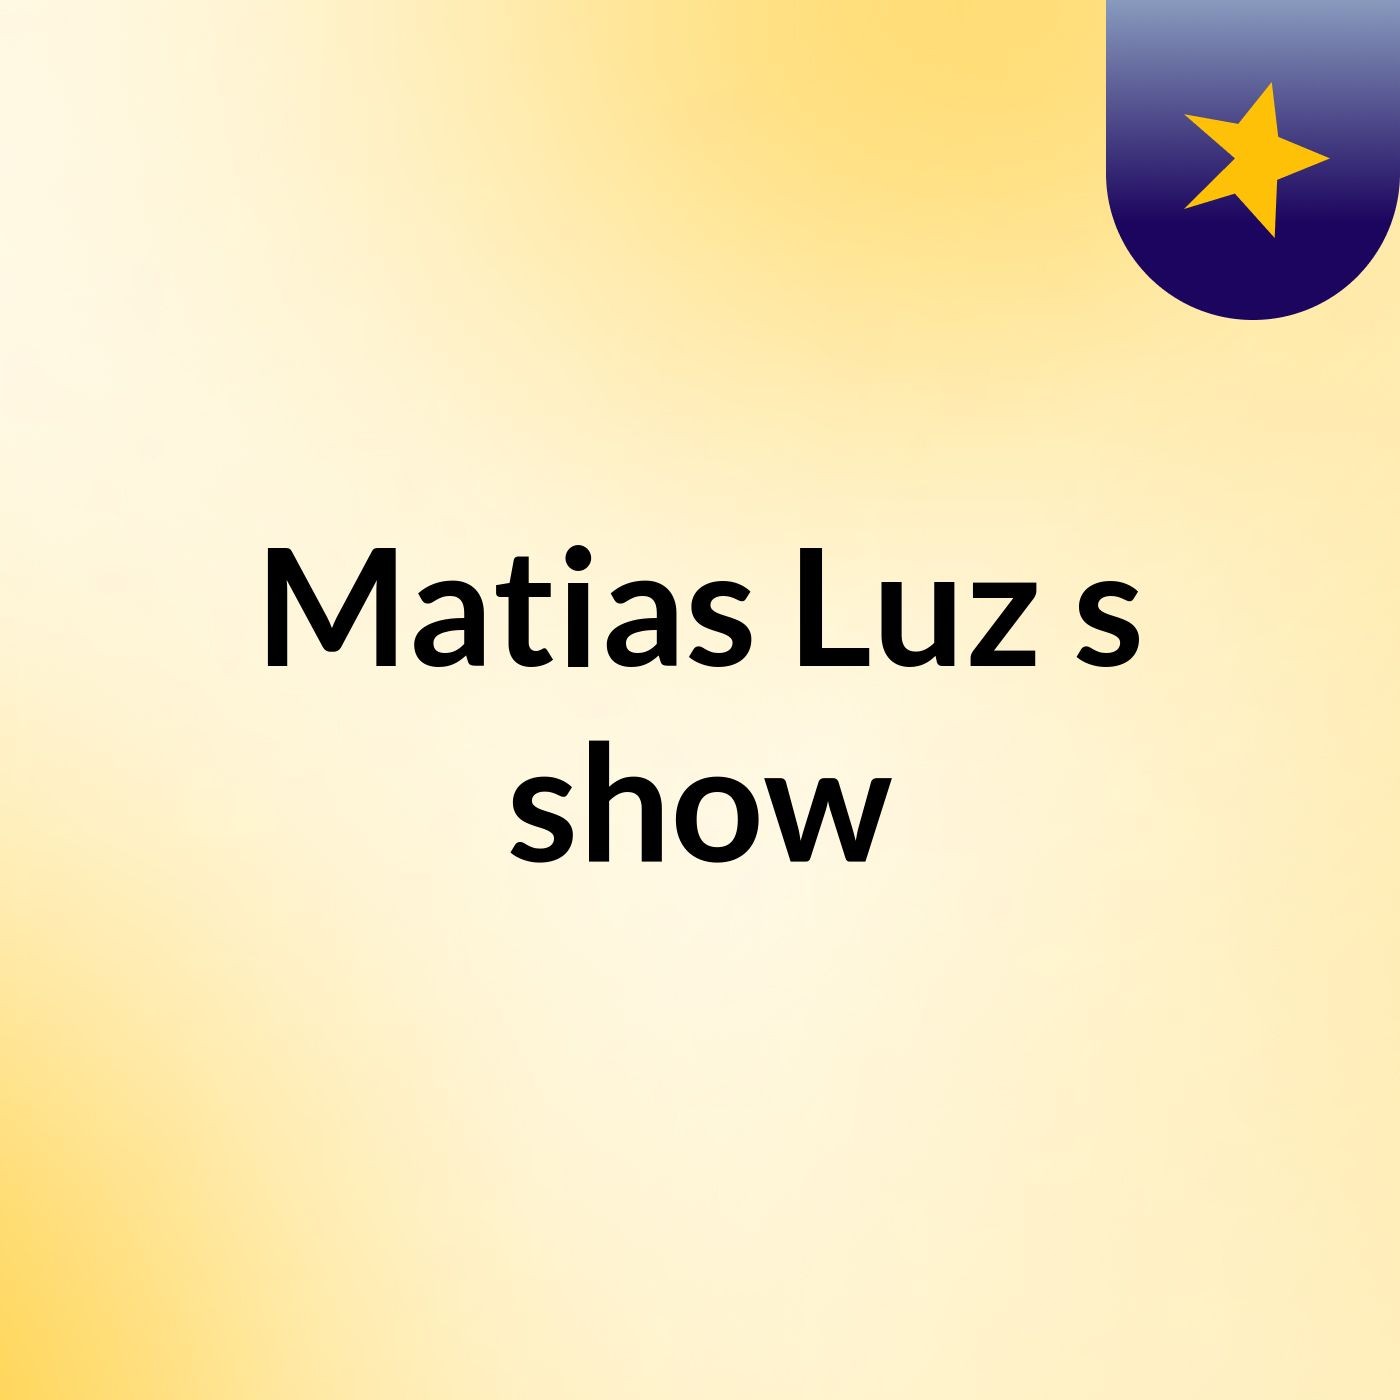 Matias Luz's show